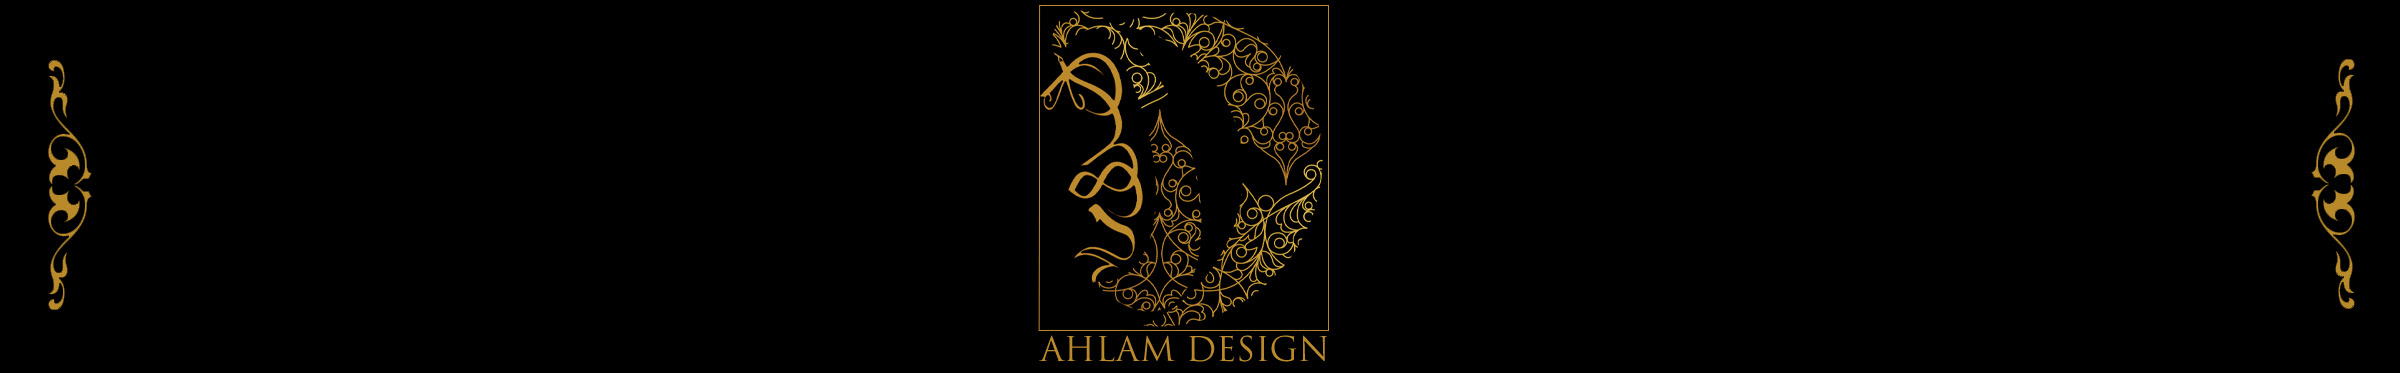 AHLAM ALI's profile banner